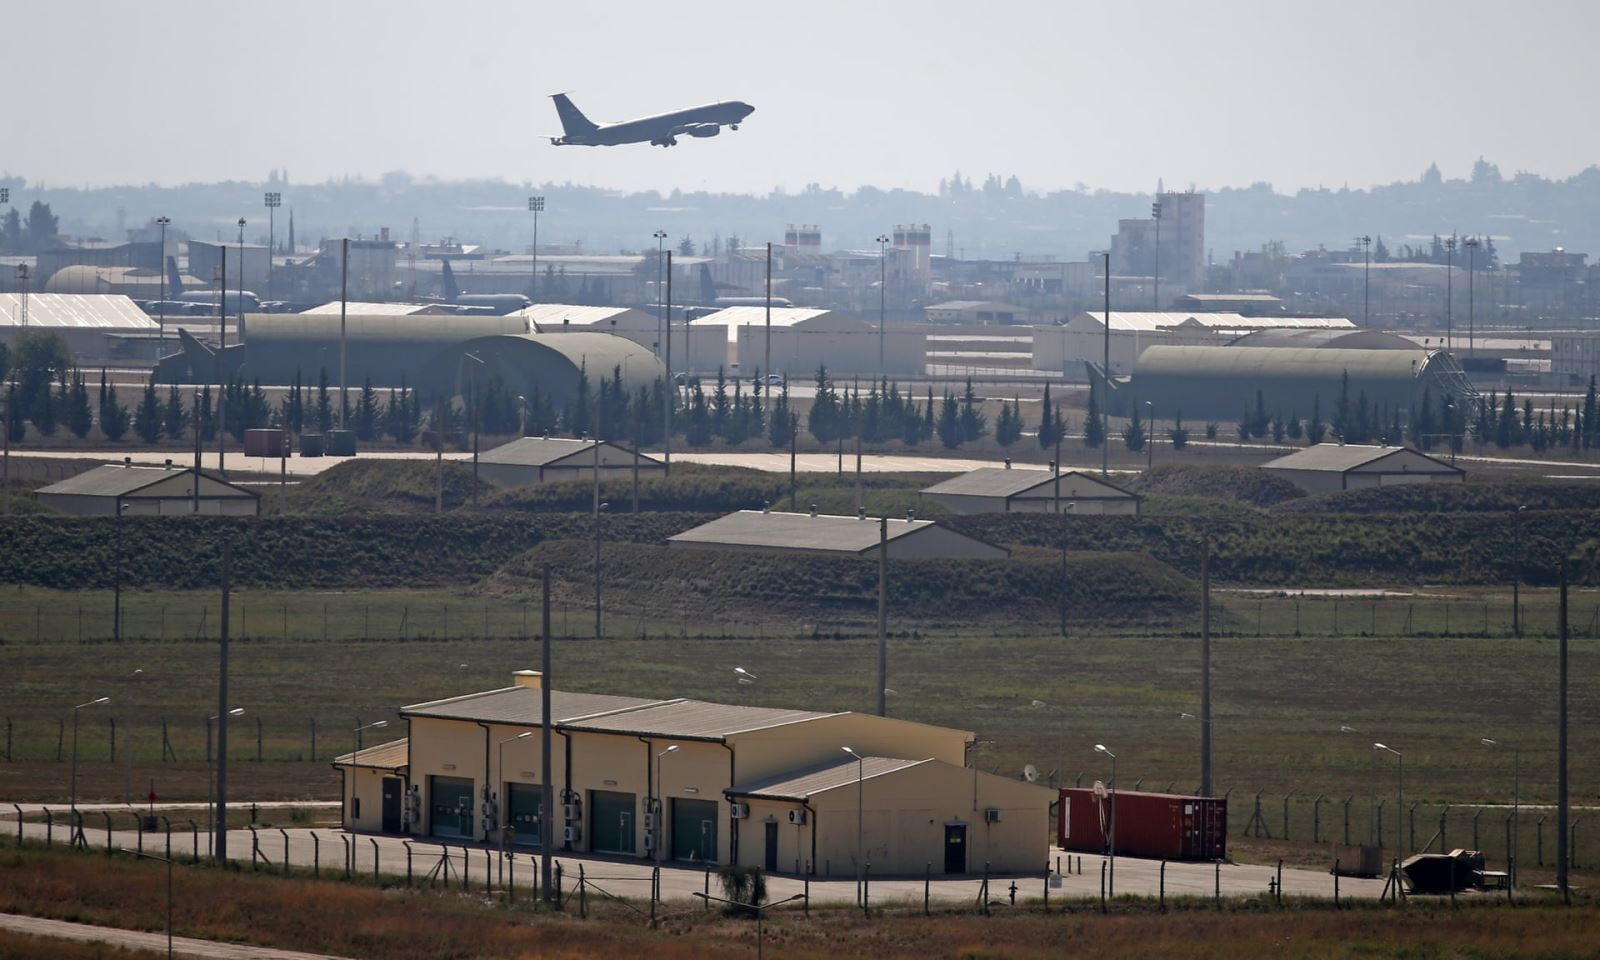 Căn cứ không quân İncirlik được Thổ Nhĩ Kỳ sử dụng để gây sức ép với Mỹ. Ảnh: Anadolu Agenc